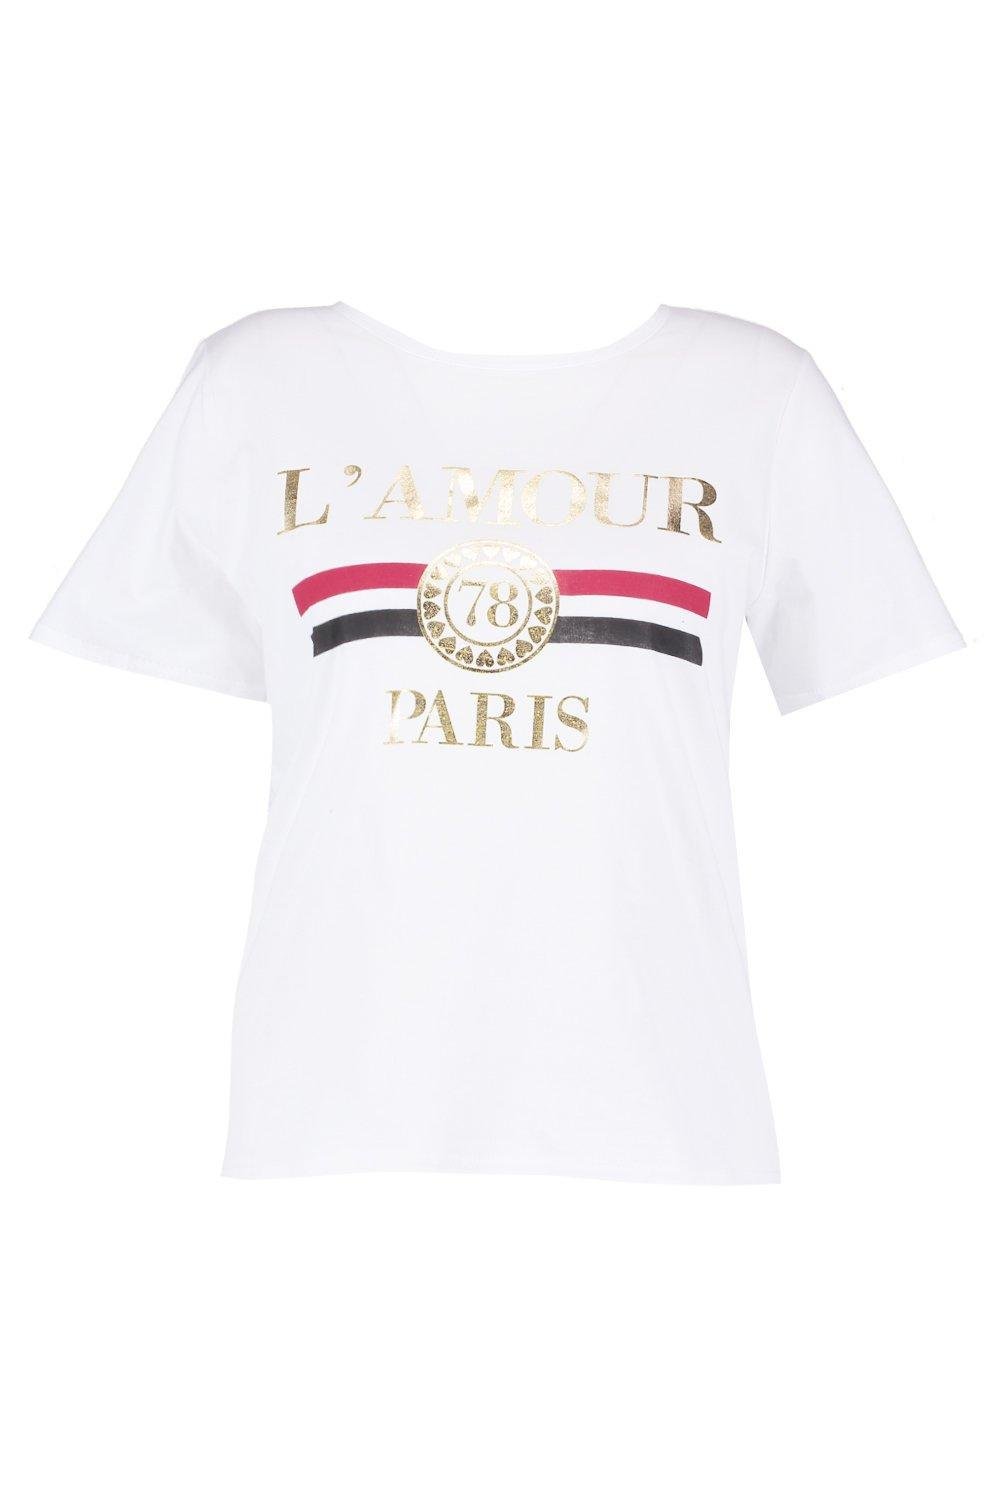 Boohoo L'Amour Paris T-Shirt in White.jpg